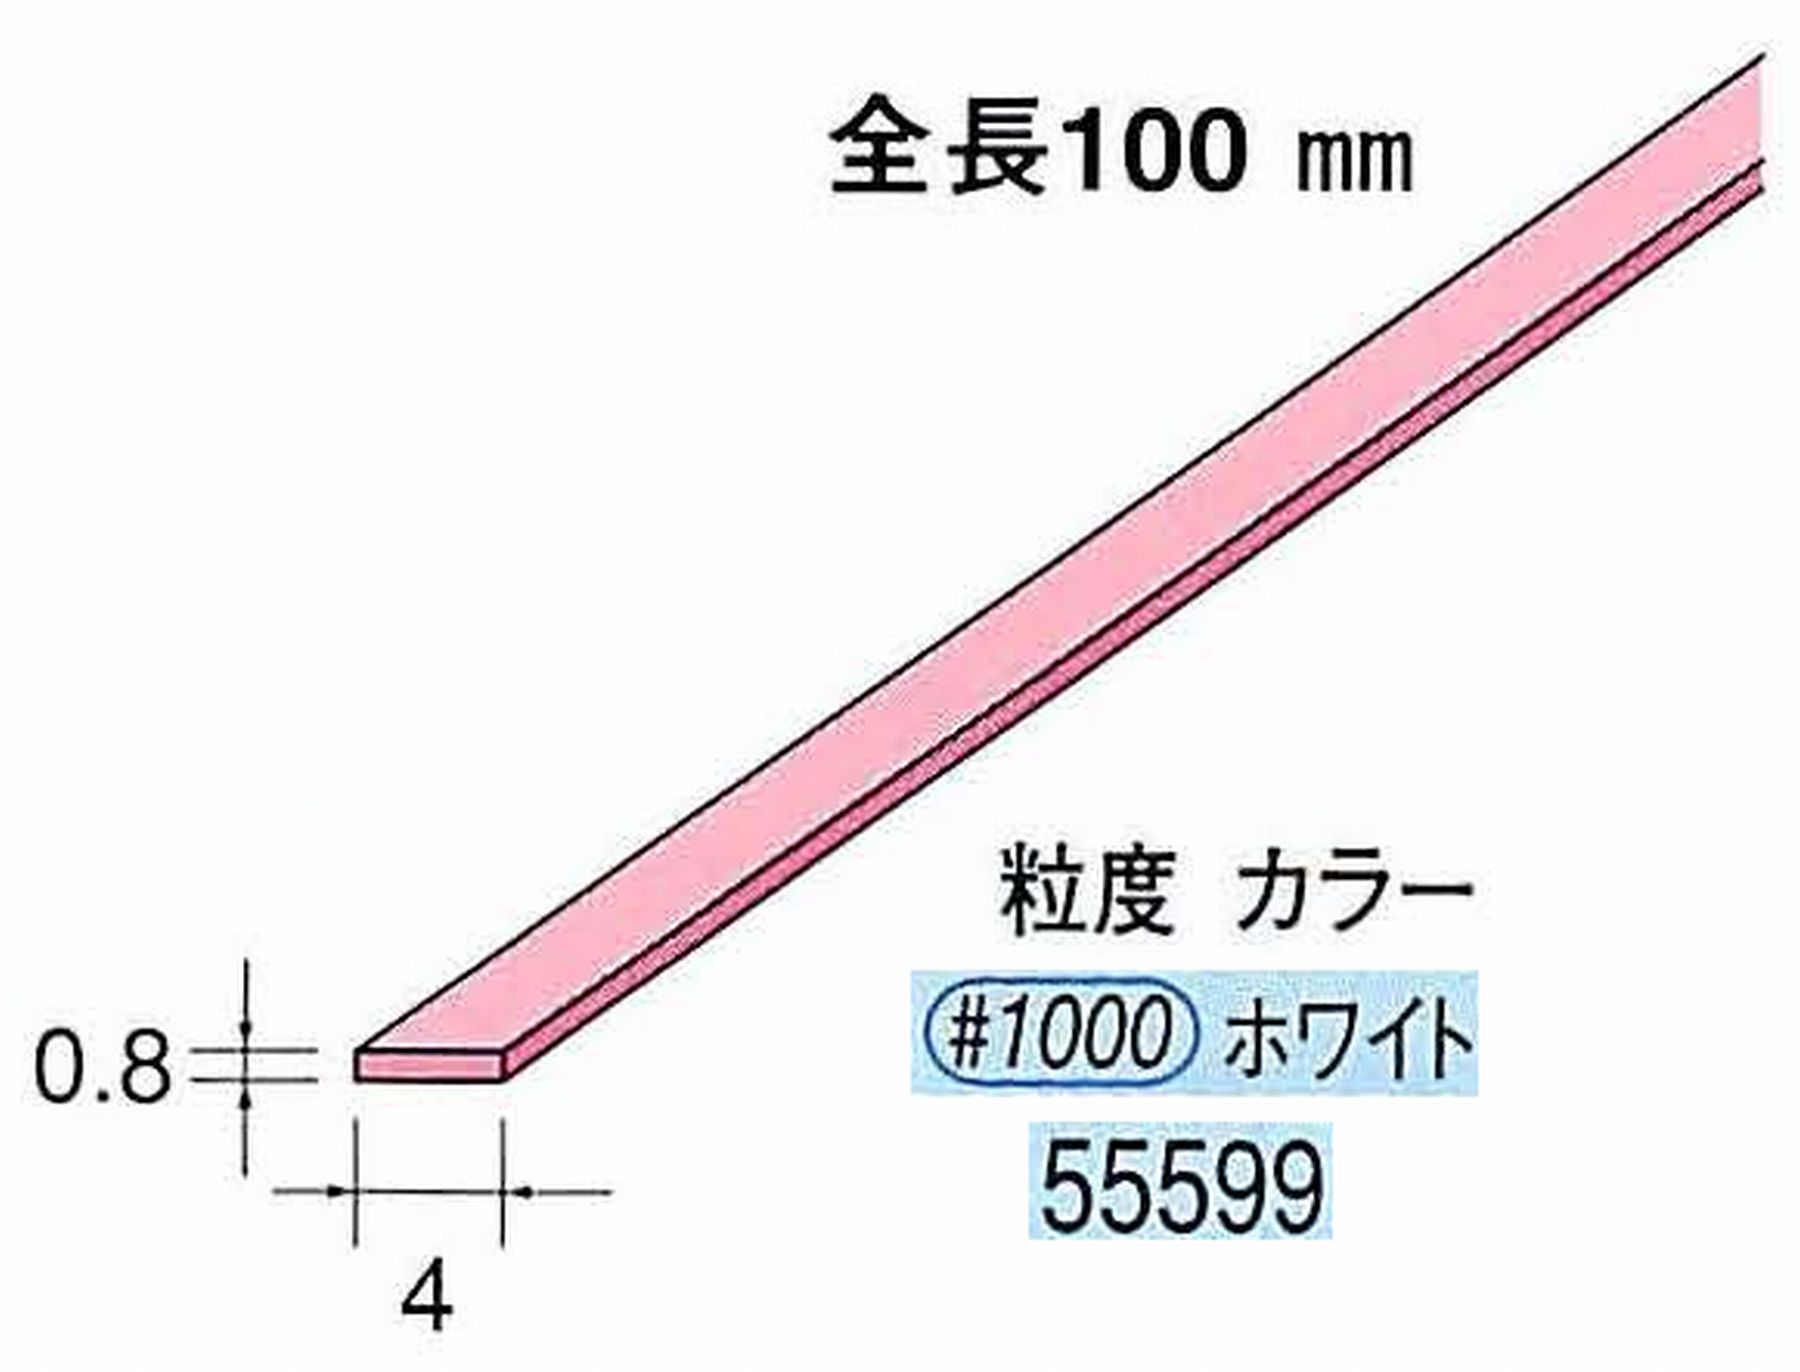 ナカニシ/NAKANISHI セラファイバー砥石 全長100mm ホワイト 55599